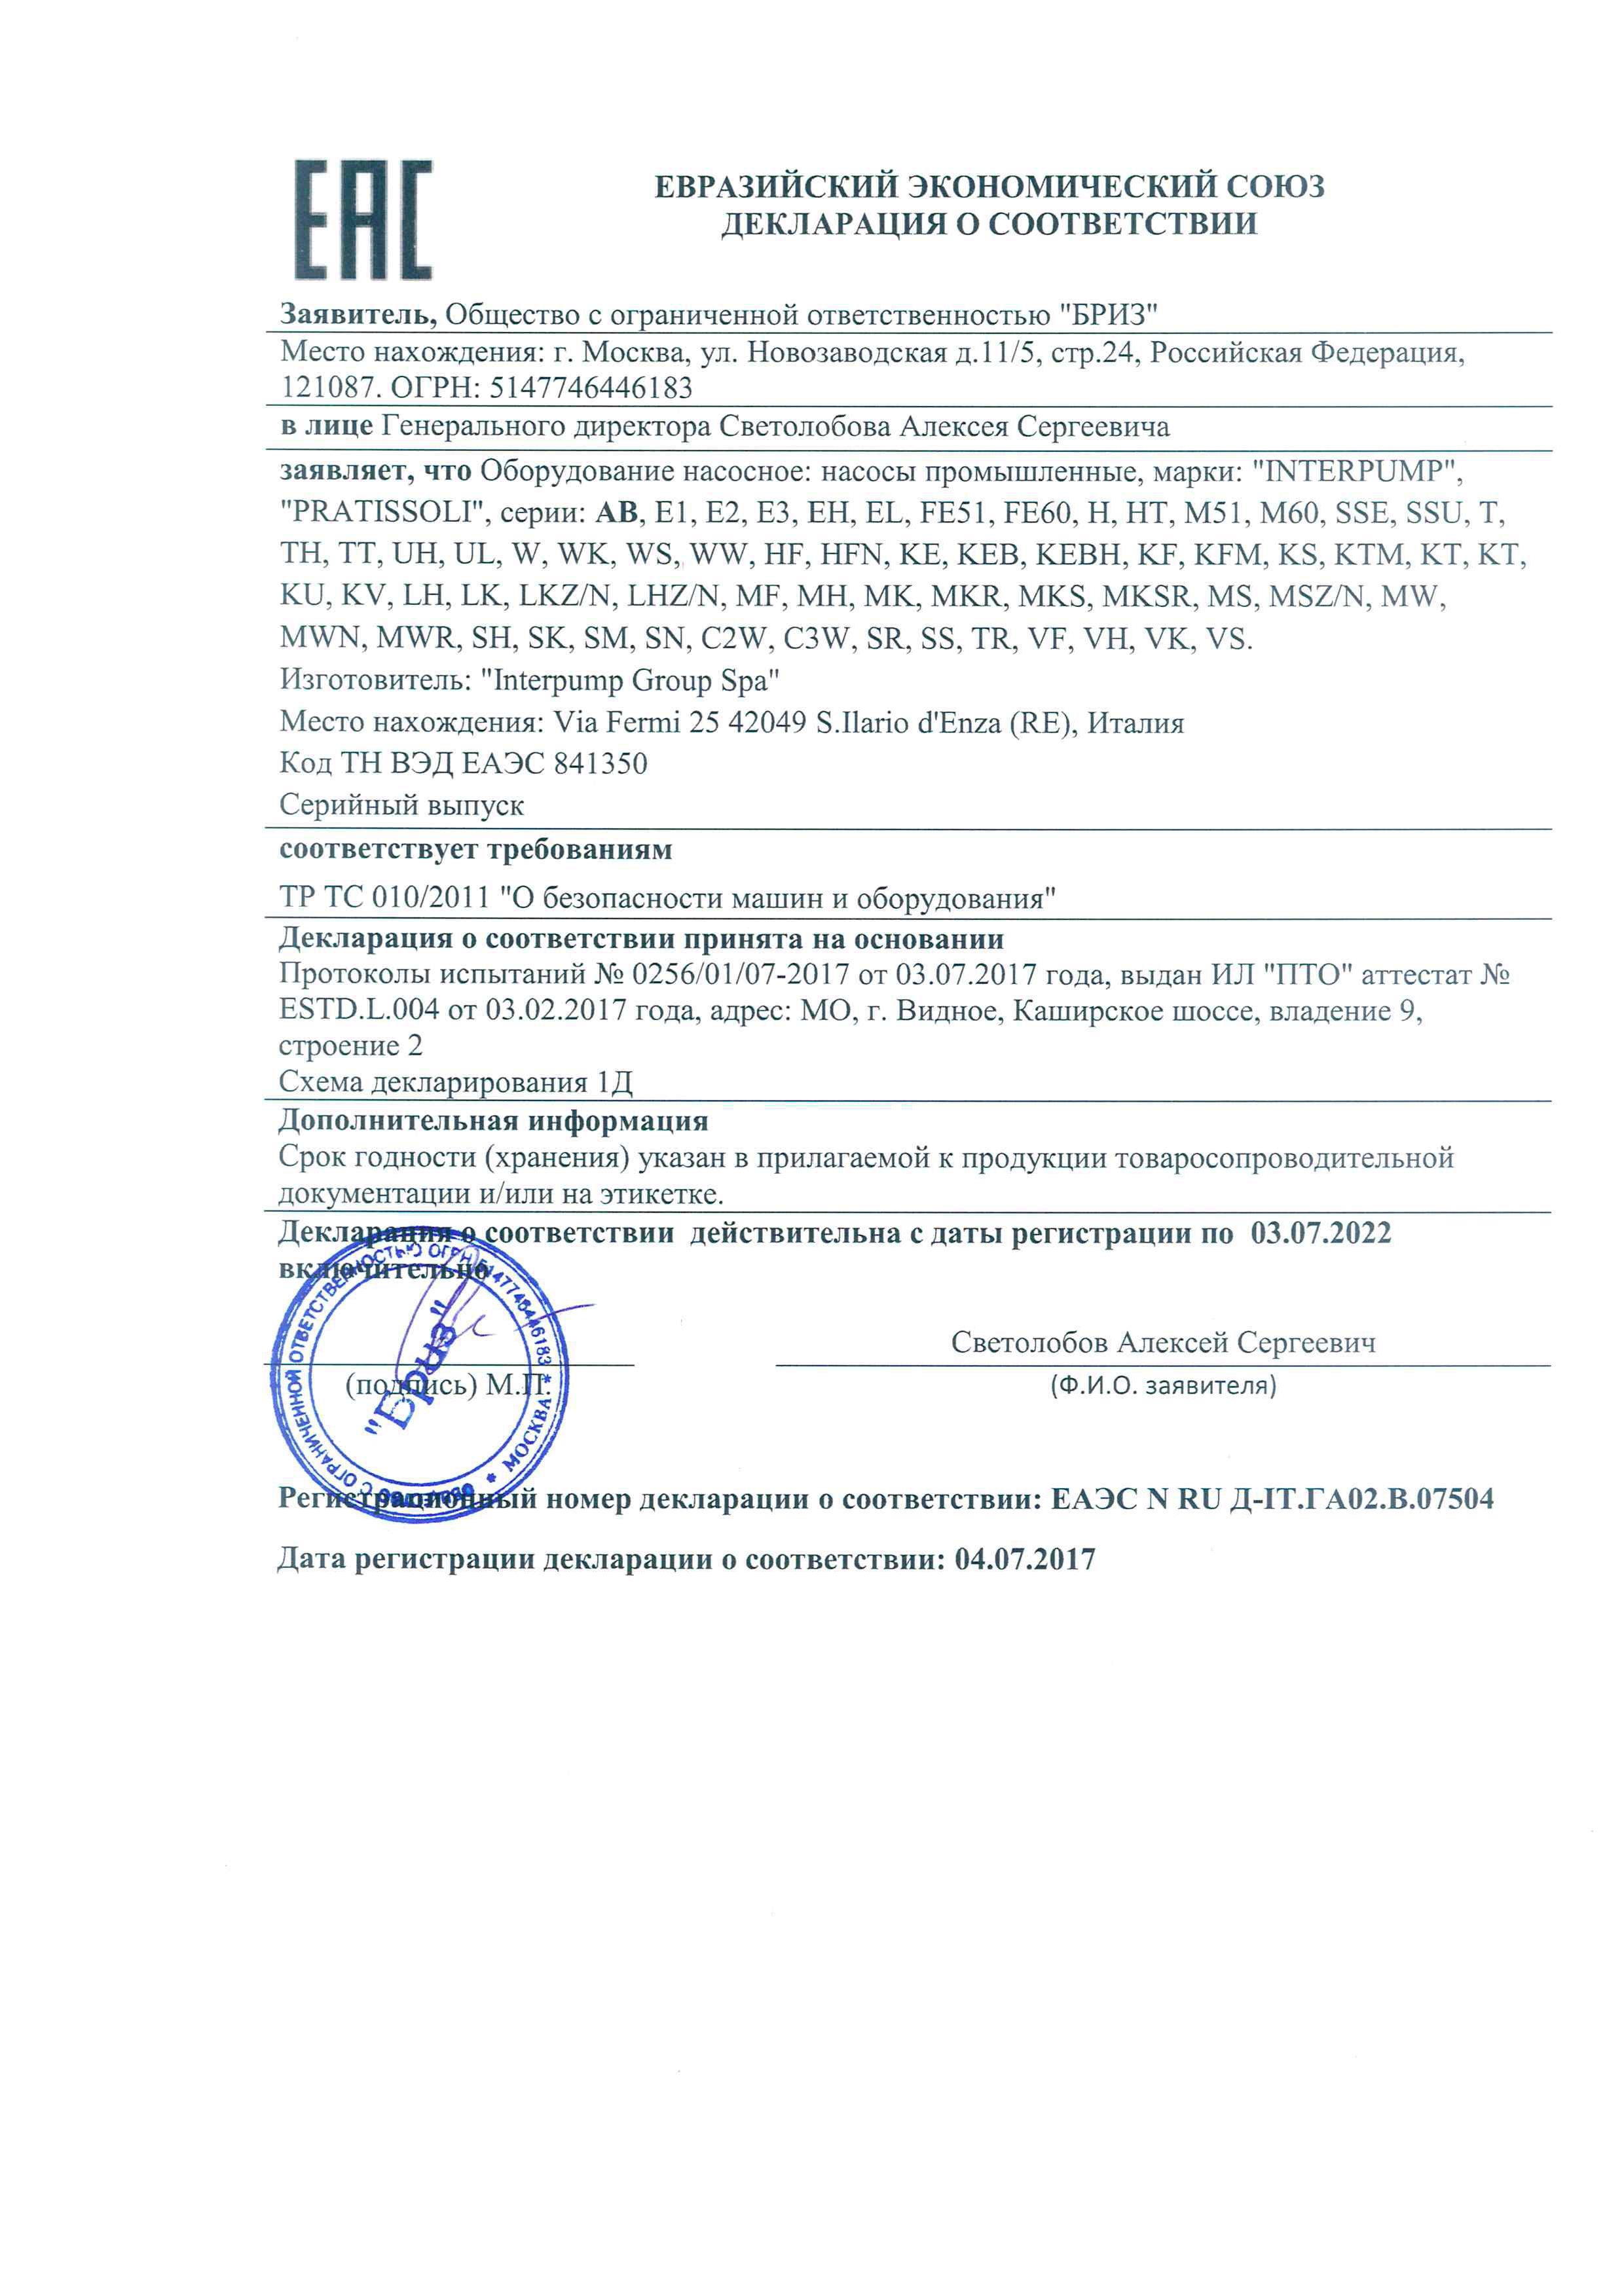 Сертификат соответсвия INTERPUMP PRATISSOLI